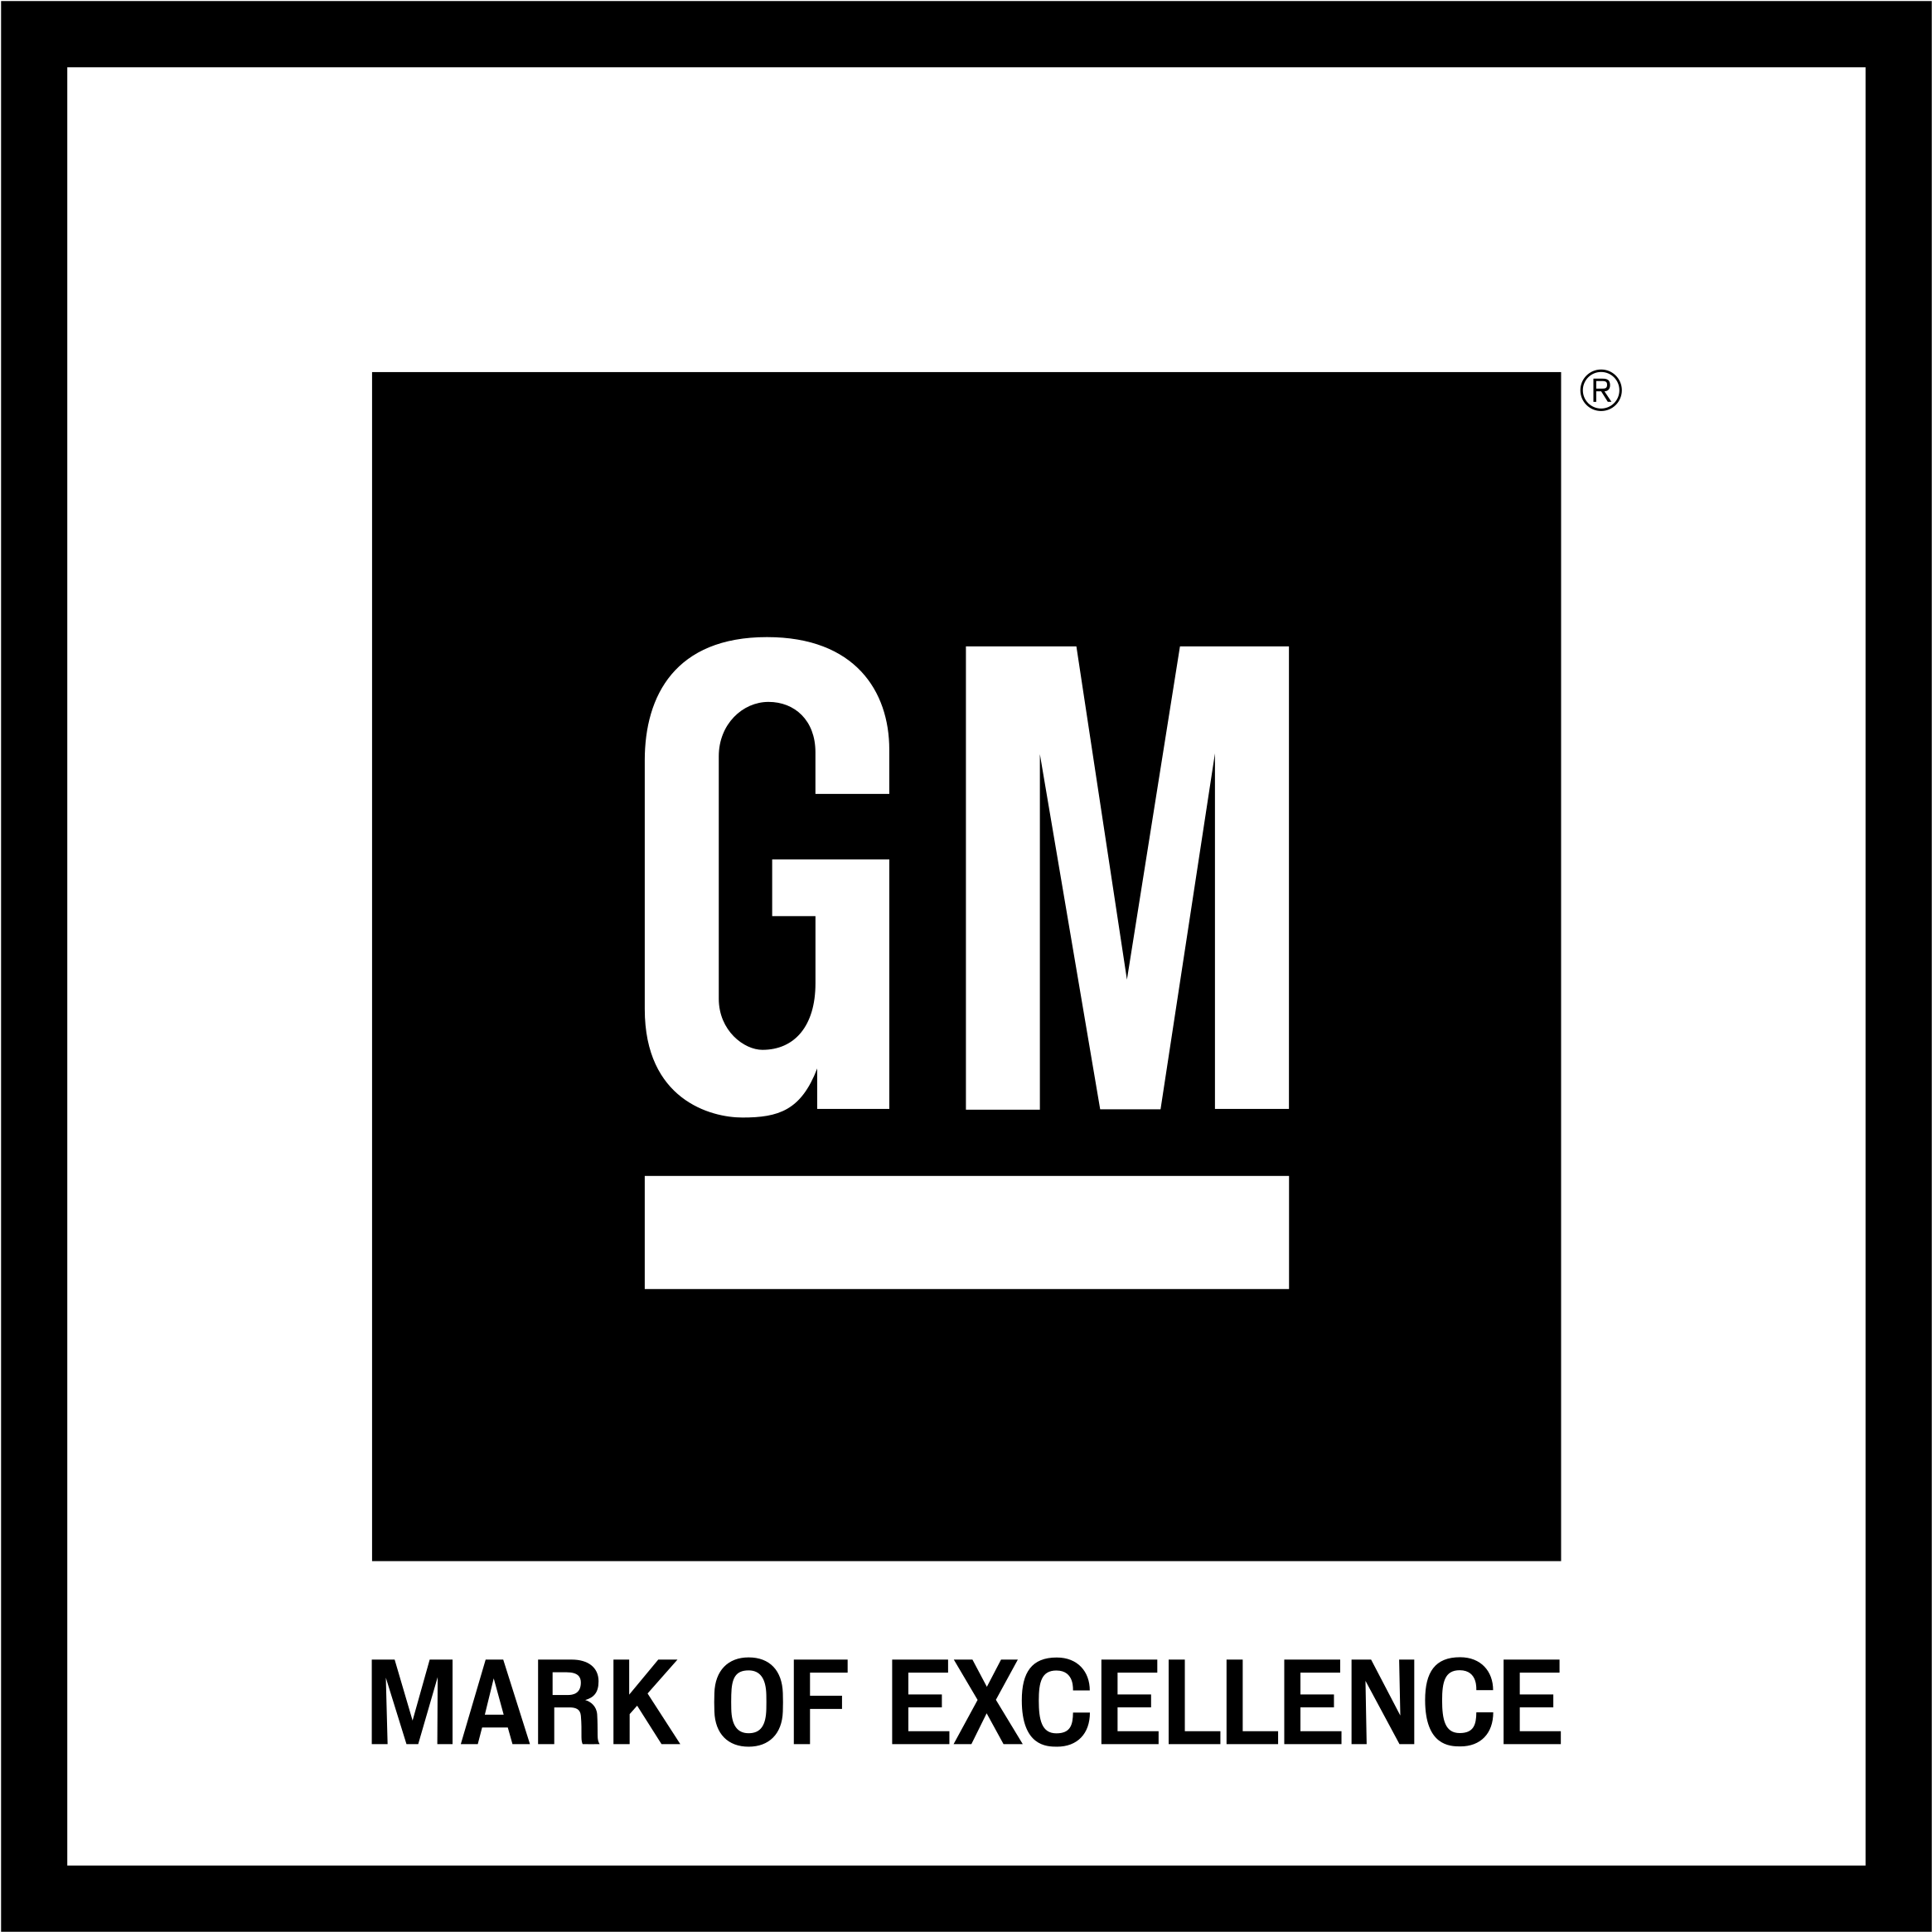 GM Logo PNG Image File